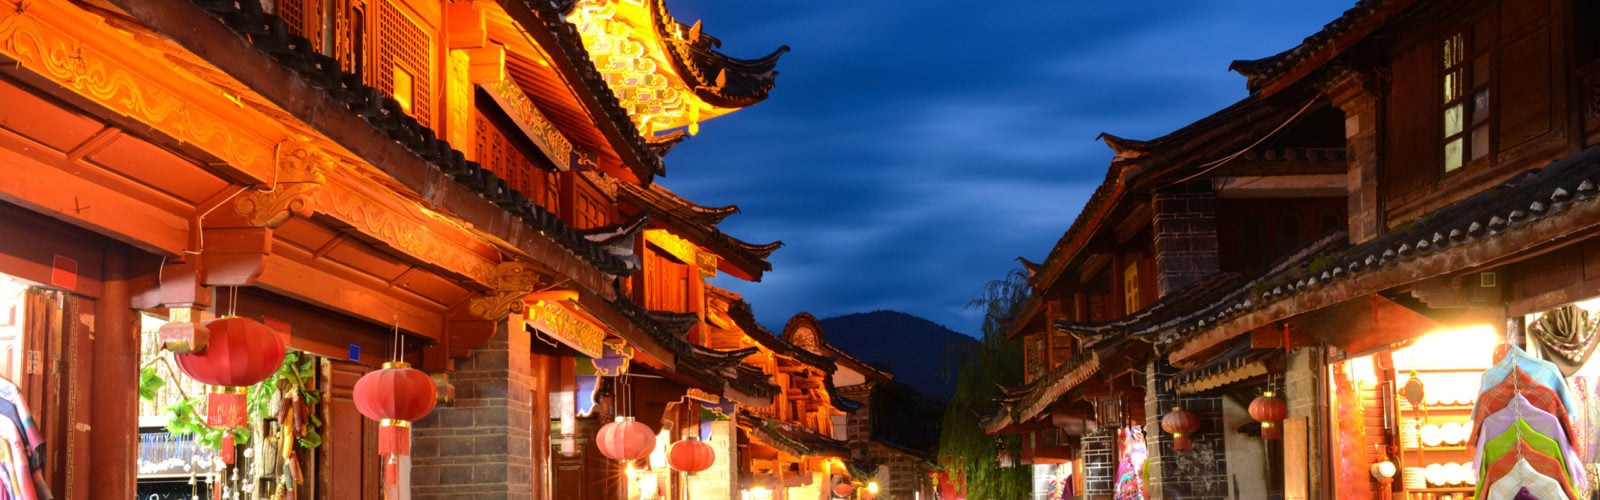 lijiang-old-town-china